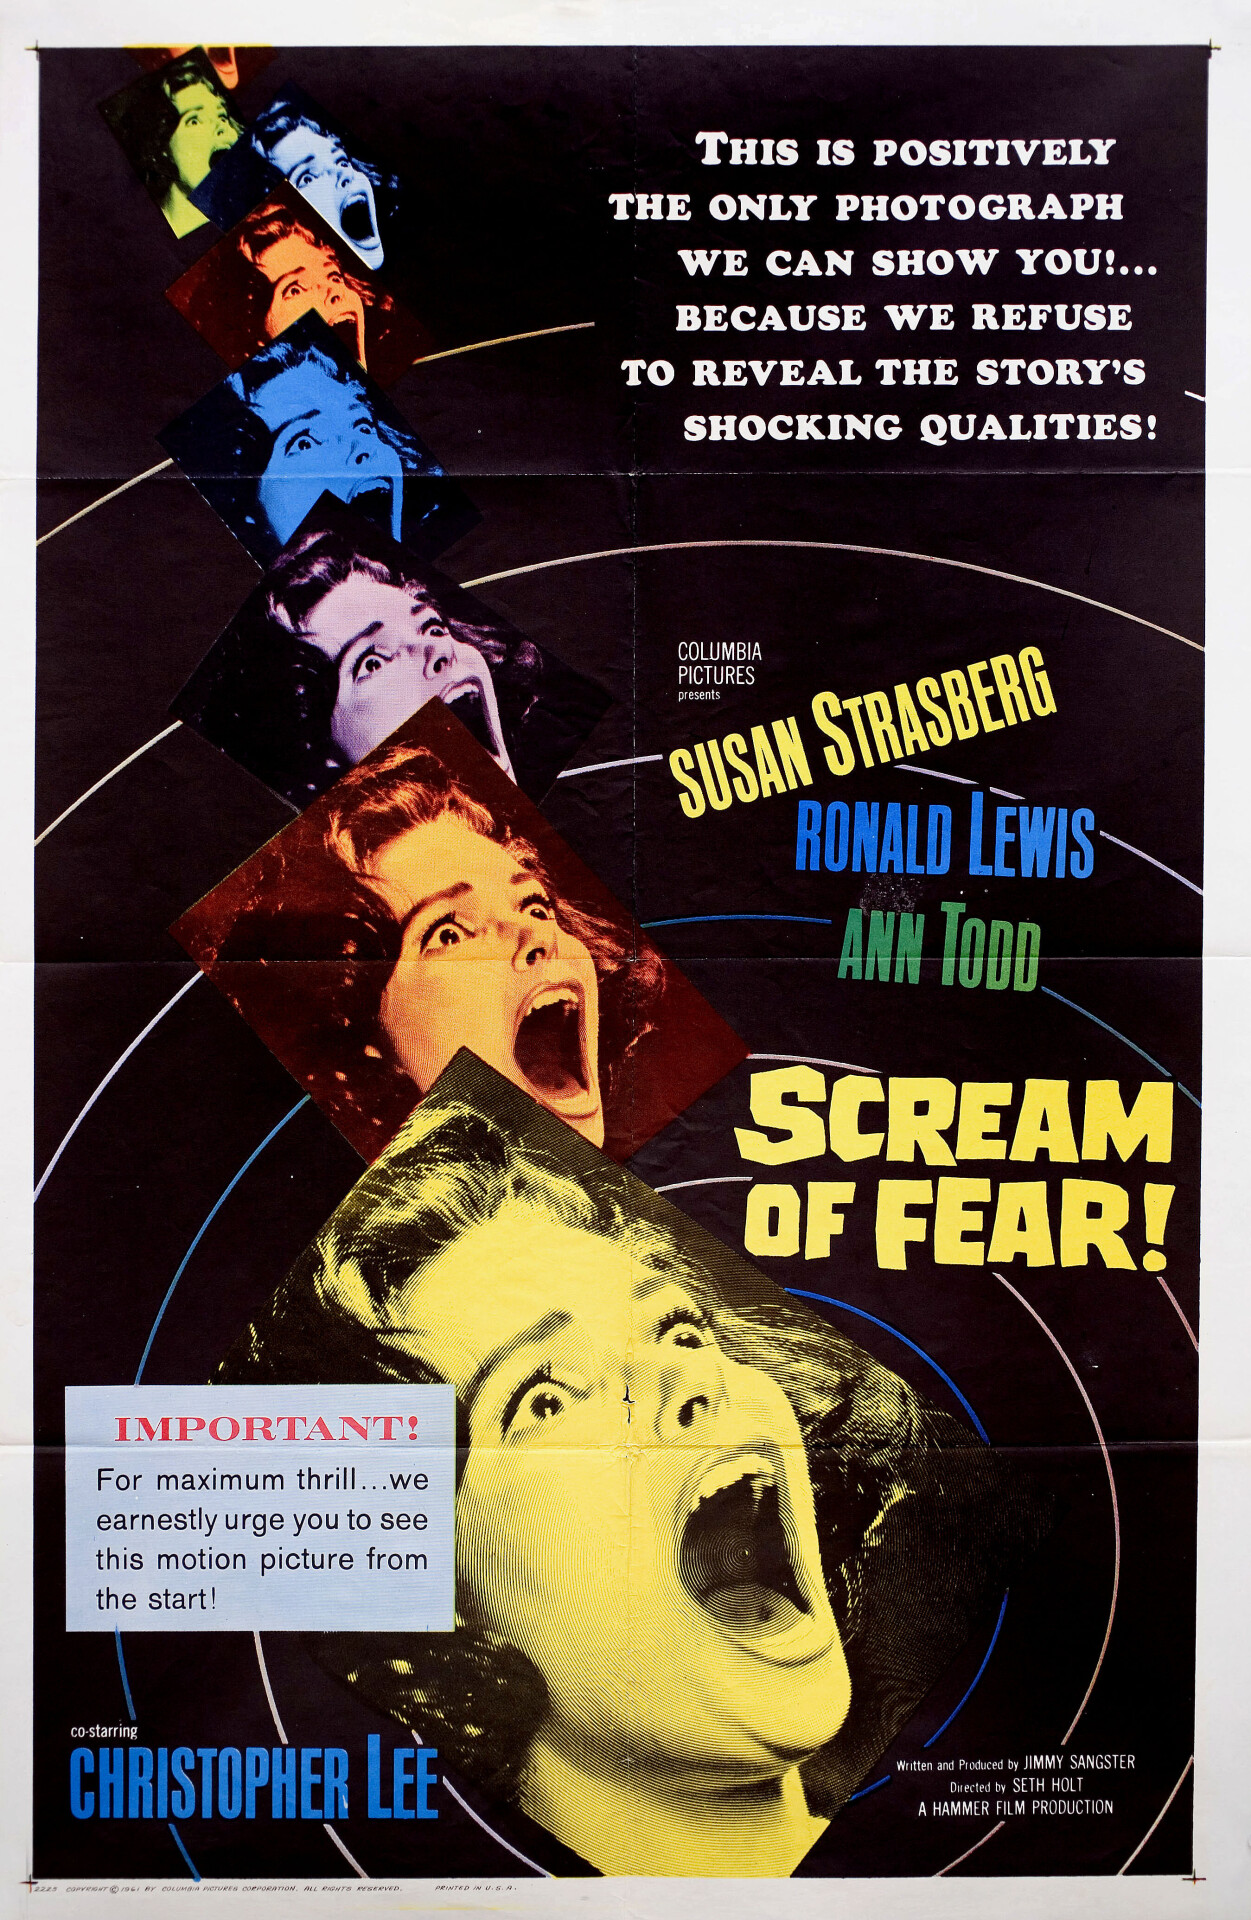 Крик ужаса (Scream of Fear, 1961), режиссёр Сет Холт, американский постер к фильму (Hummer horror, 1961 год)